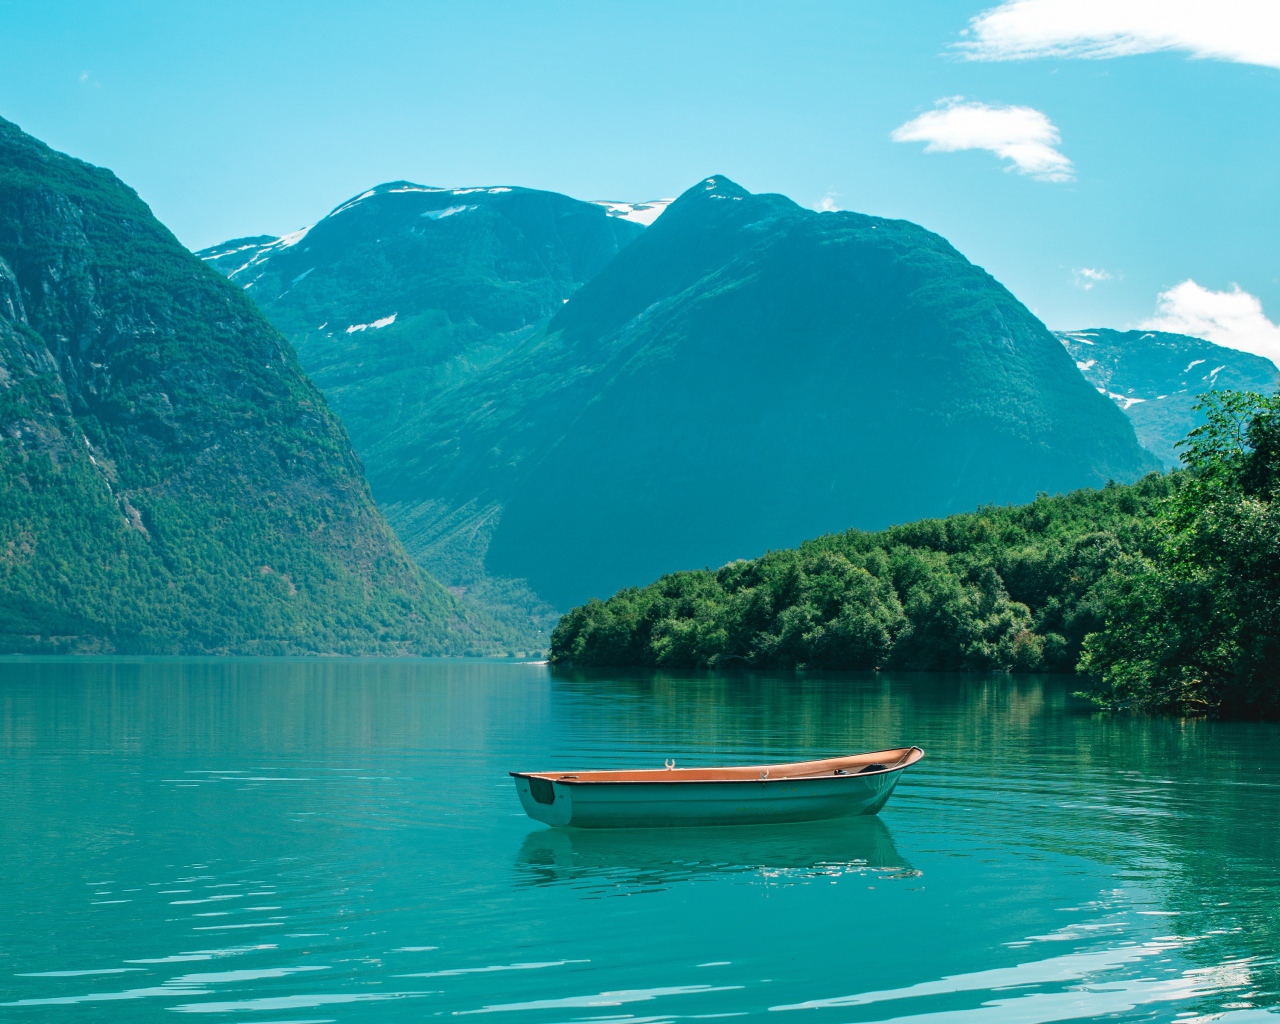 Лодка на голубой воде озера в горах 